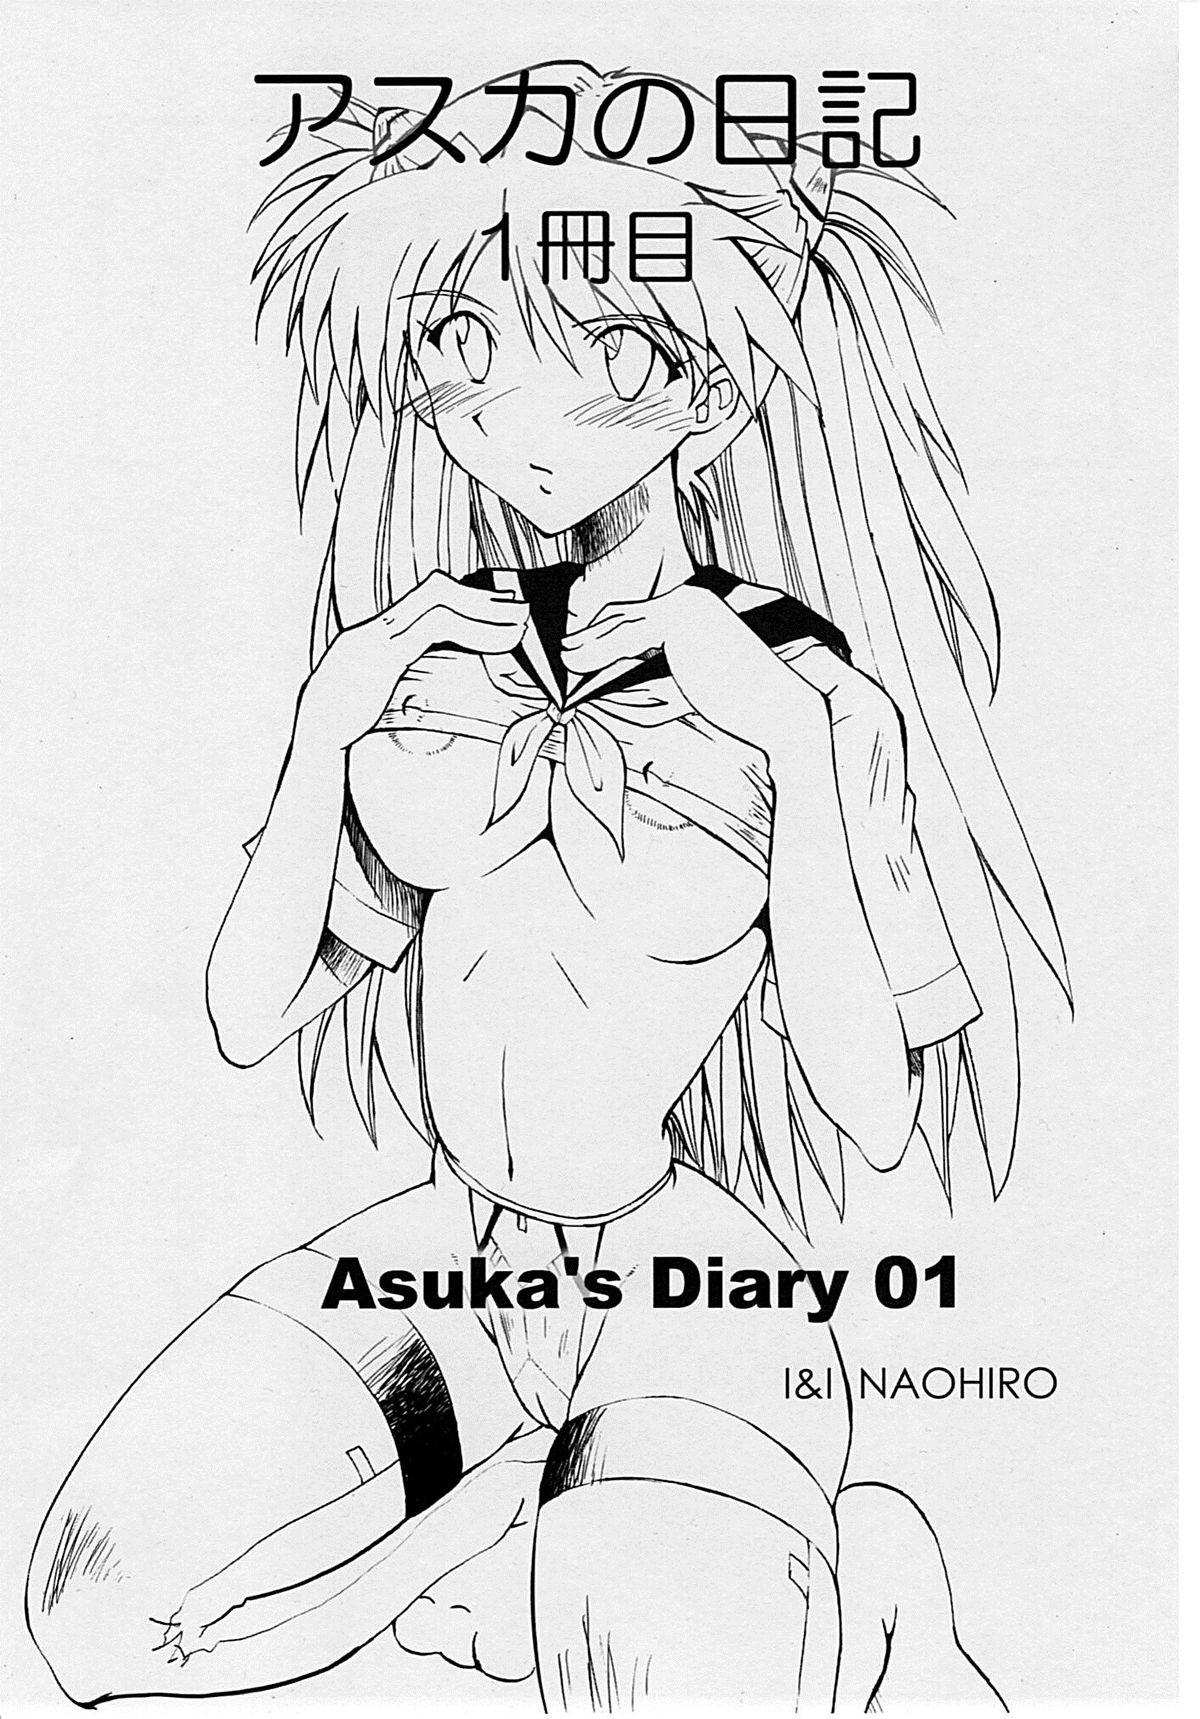 Perfect Asuka's Diary 01 - Neon genesis evangelion Price - Page 2